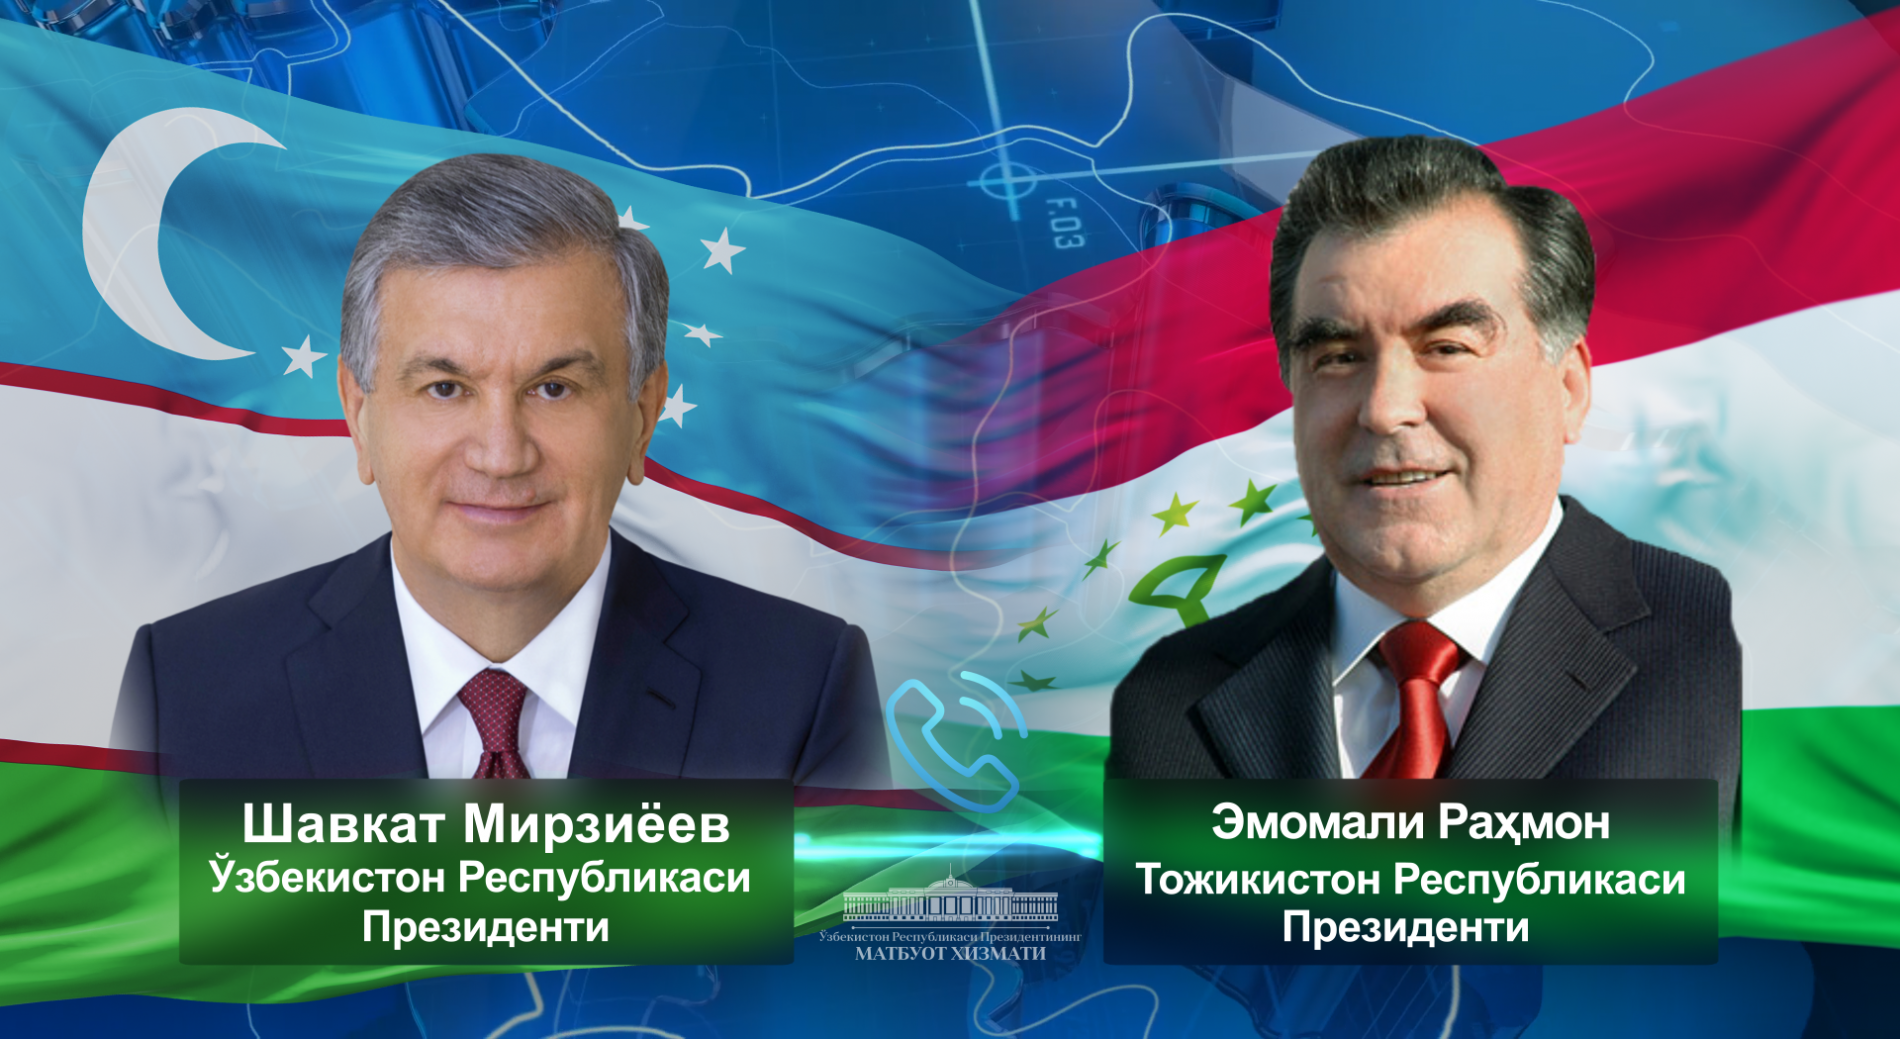 Президент Узбекистана обсудил с Президентом Таджикистана актуальные вопросы двусторонней повестки